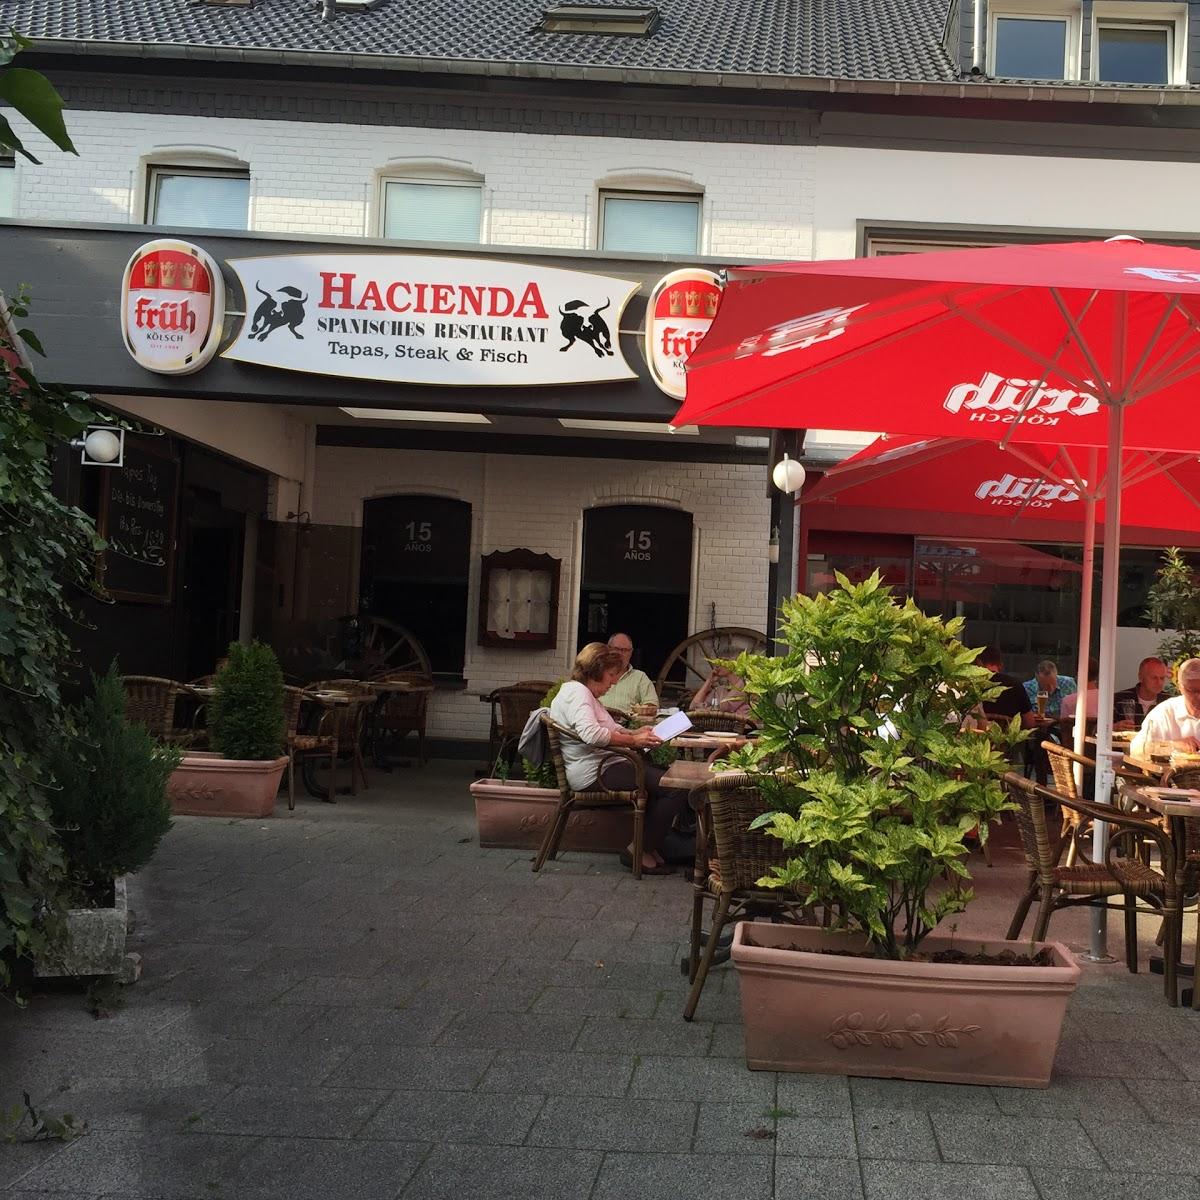 Restaurant "Restaurant Hacienda" in Bergisch Gladbach